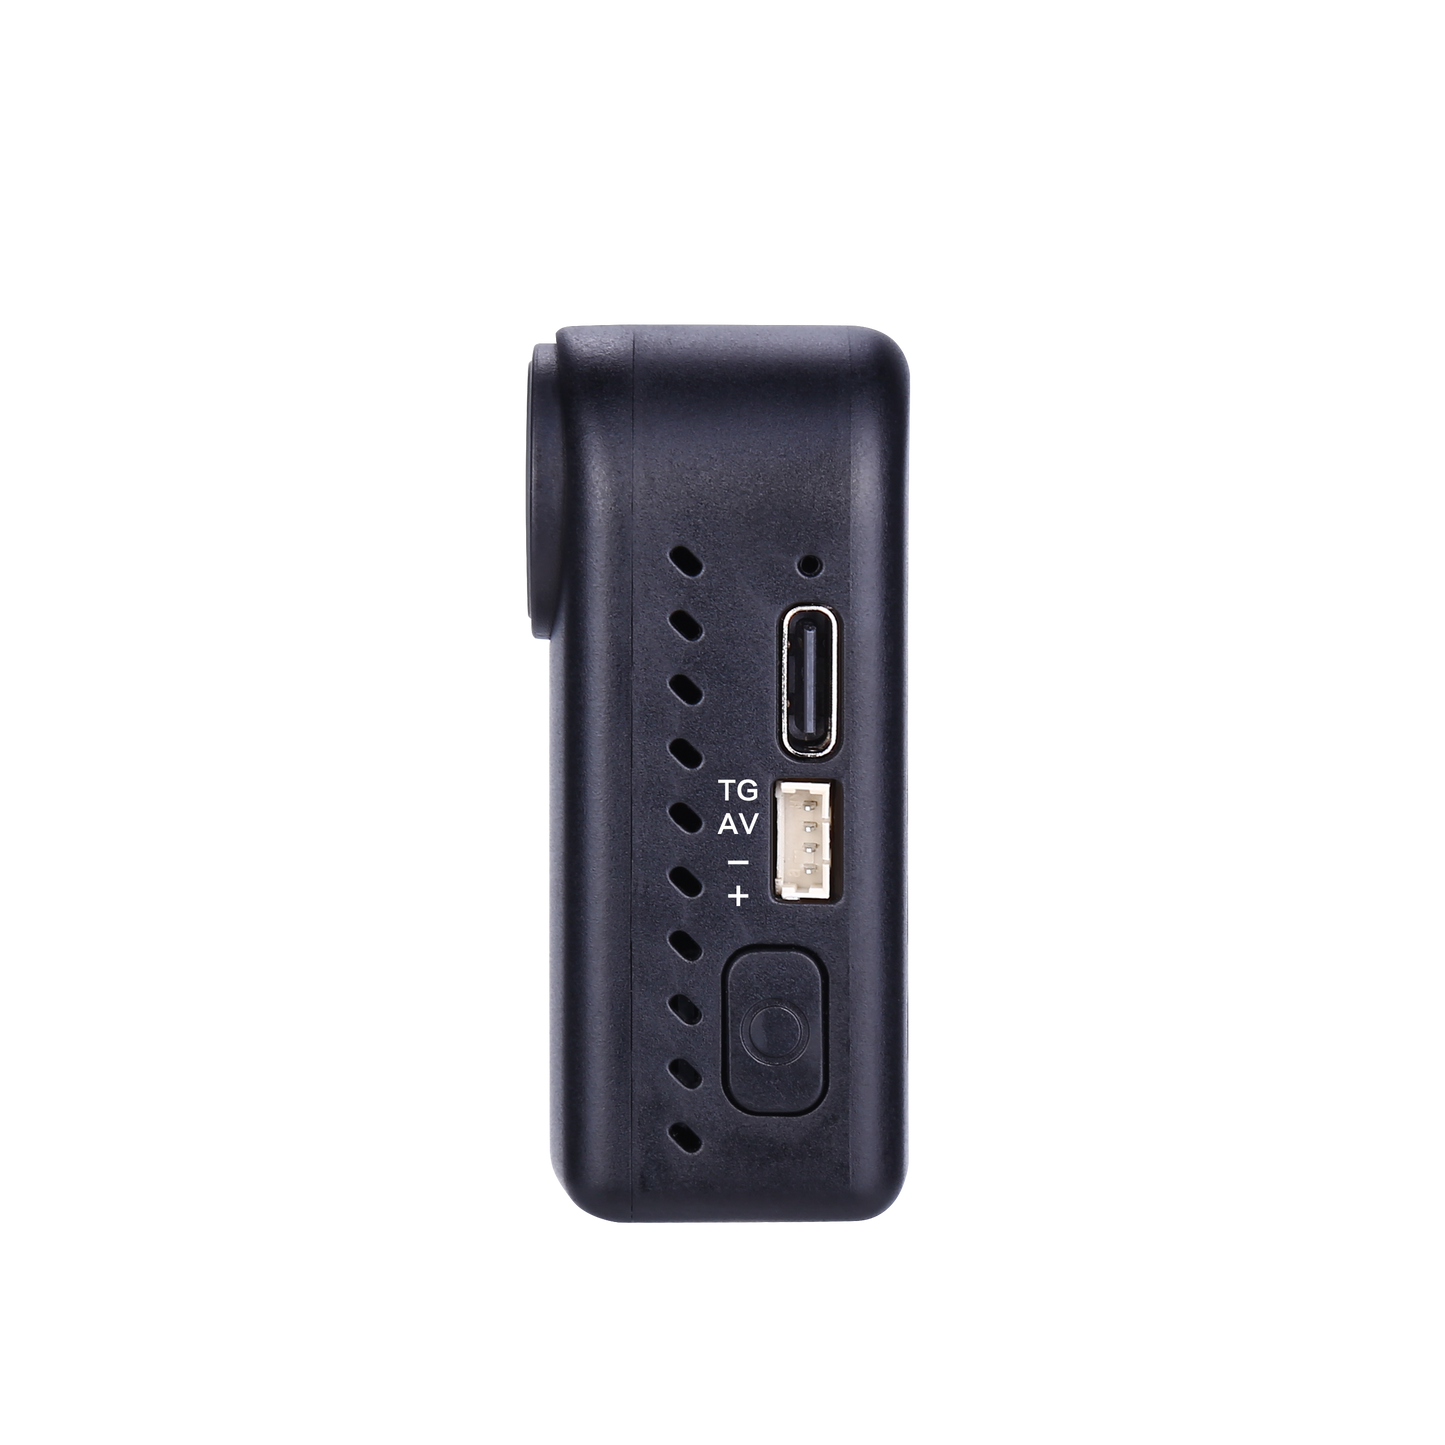 Hawkeye Thumb 2 4K アクション カメラ - 磁気、ペットに優しい、ジャイロフロー安定化、WiFi 対応、ワイド電圧、ND16 フィルター付き PC CAM